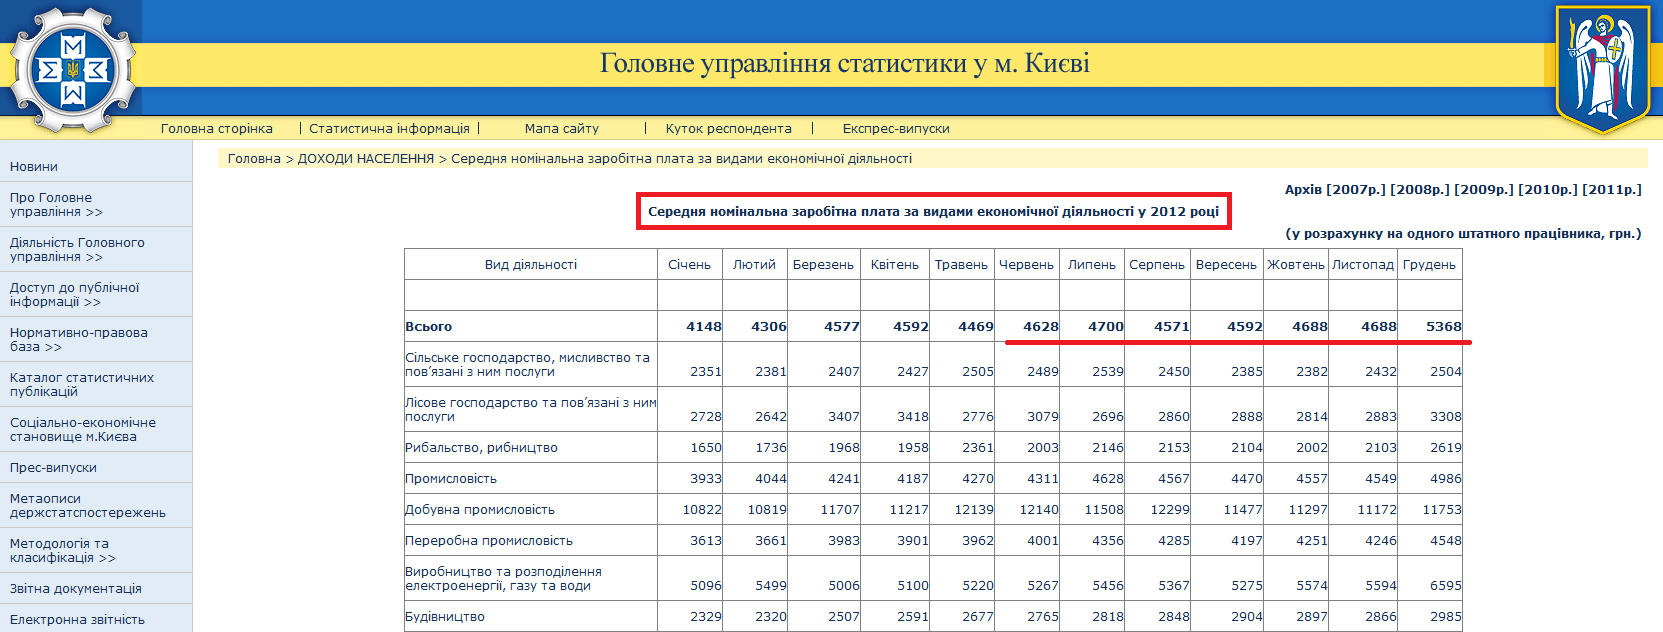 http://www.gorstat.kiev.ua/p.php3?c=1139&lang=1